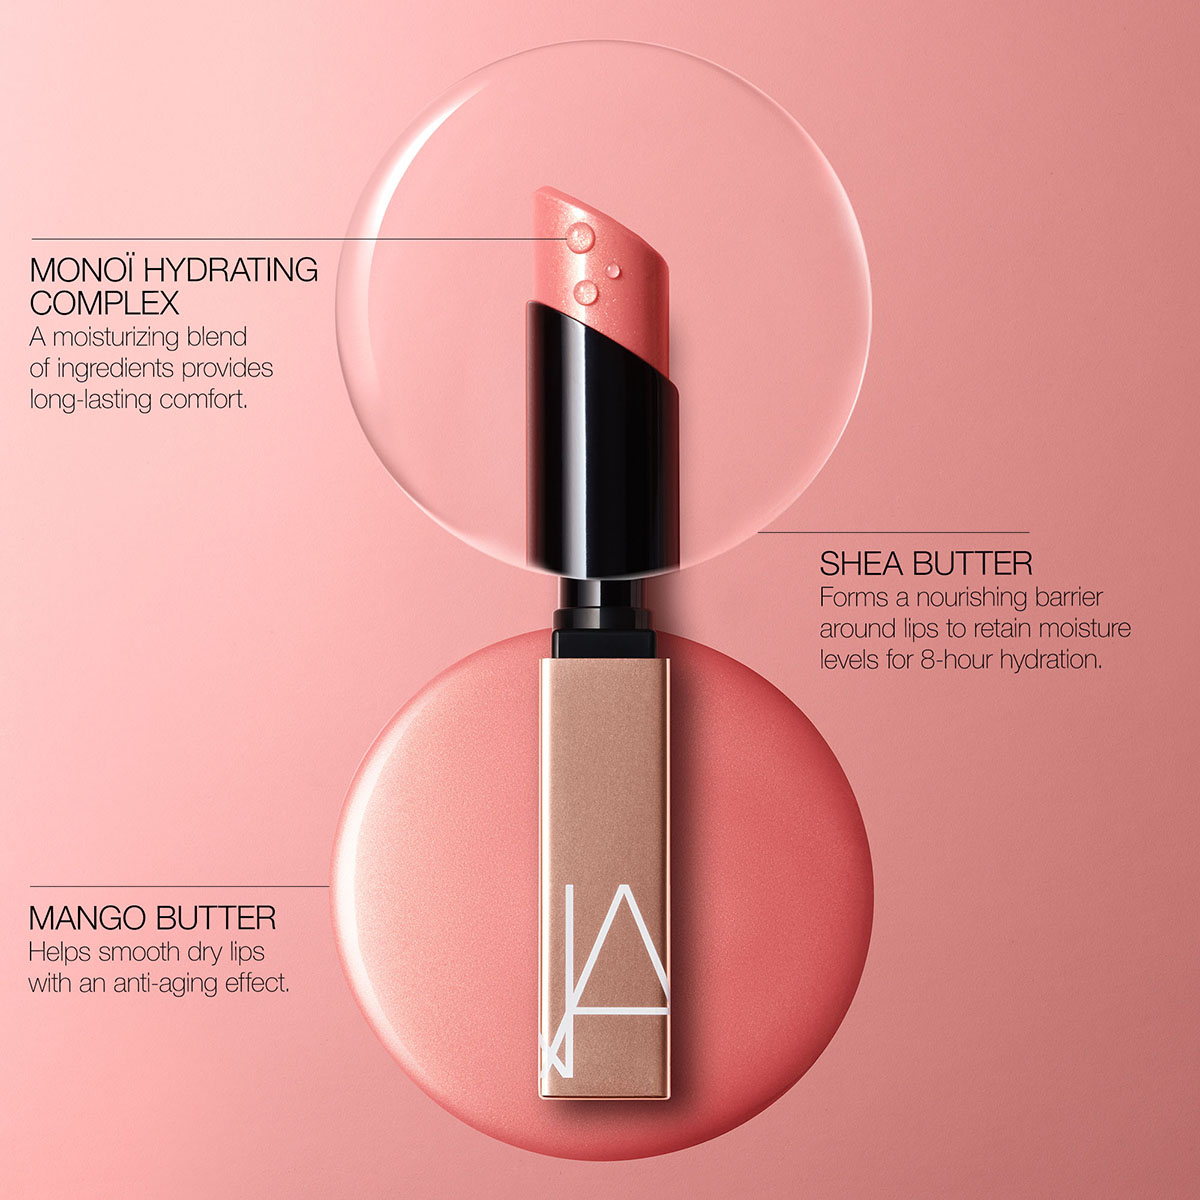 NARS - Afterglow Sensual Shine Lipstick